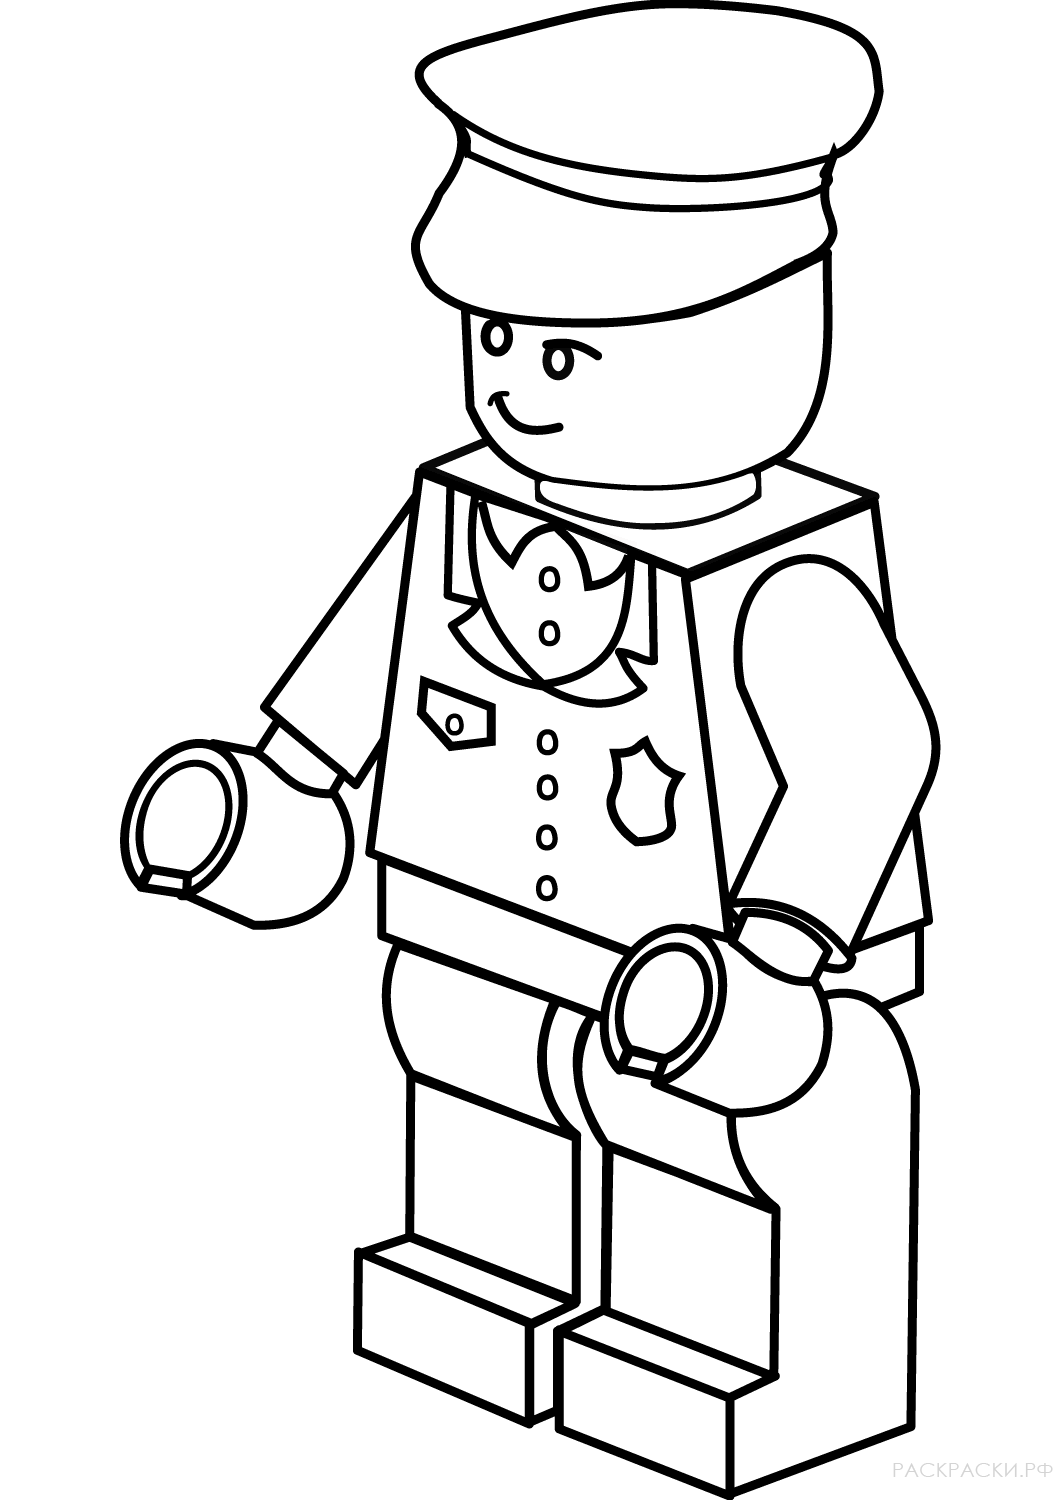 Раскраска Лего Полицейский 3